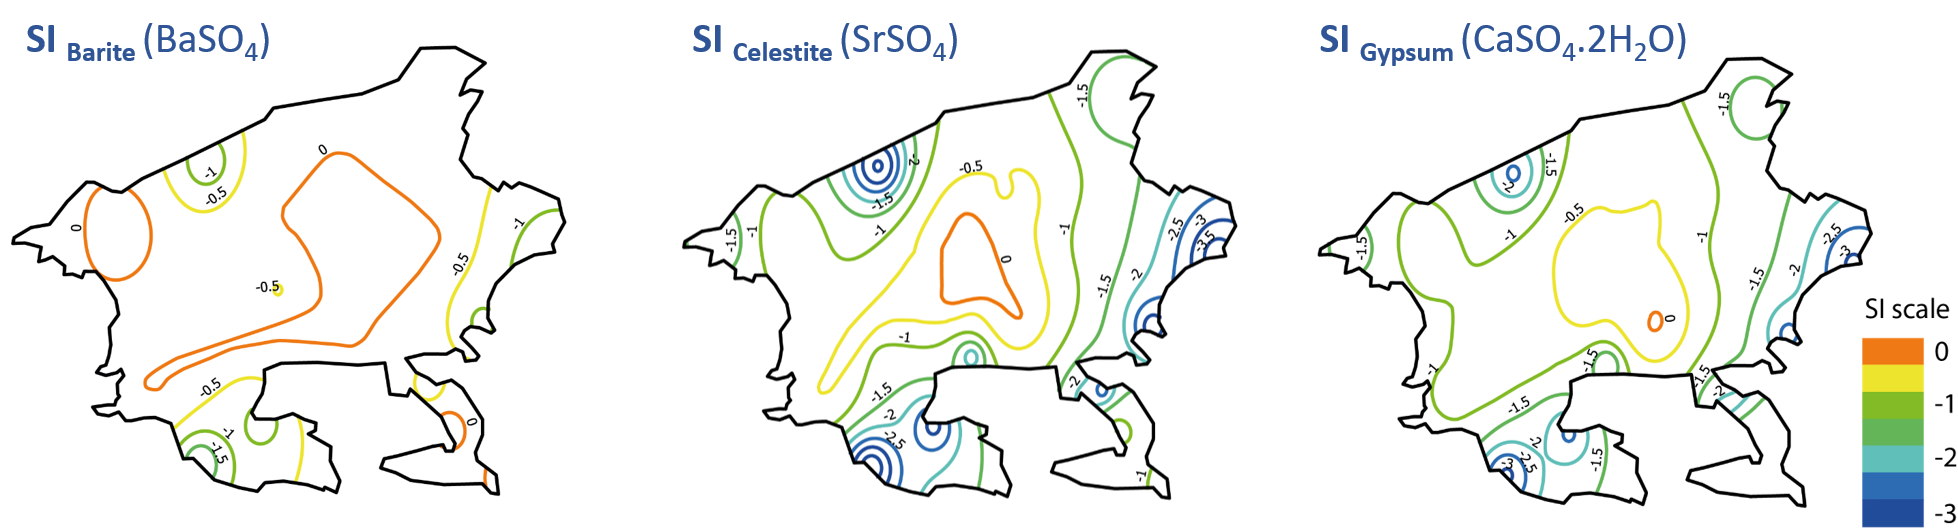 Carte d’interpolation des indices de saturation de la baritine, de la célestine et du gypse.